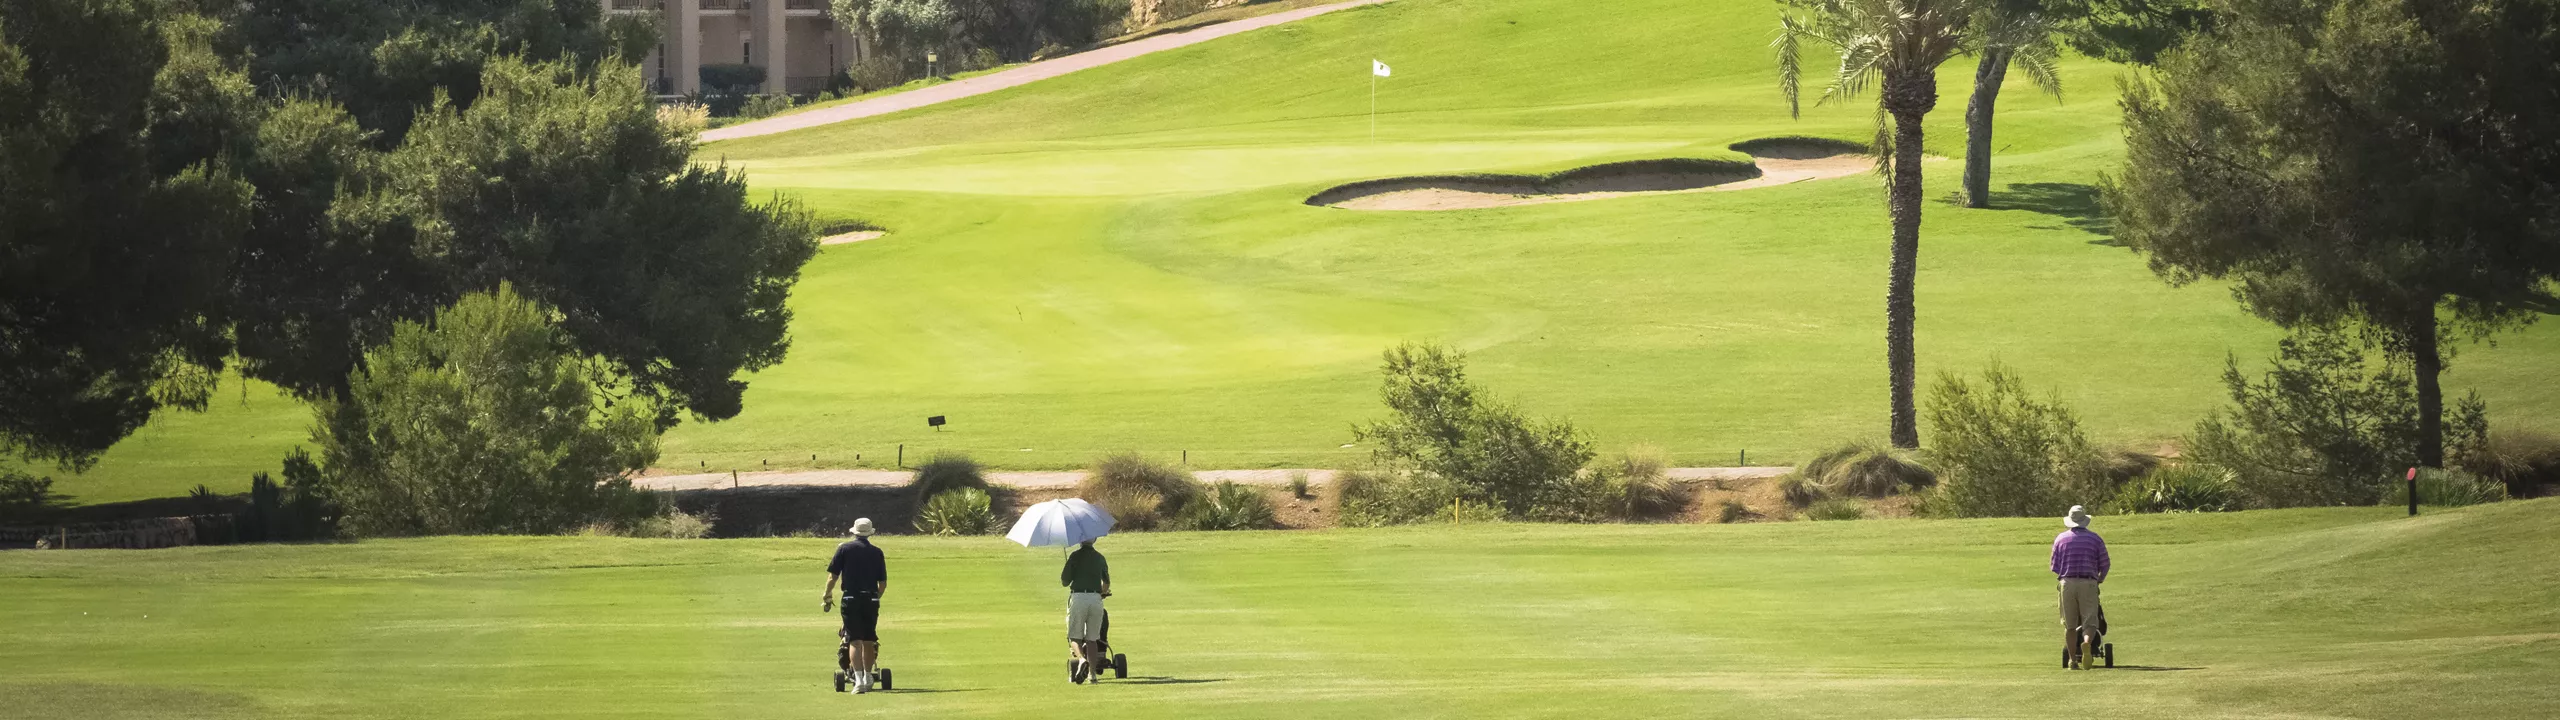 Reglamento y normativa de golf - La Manga Club